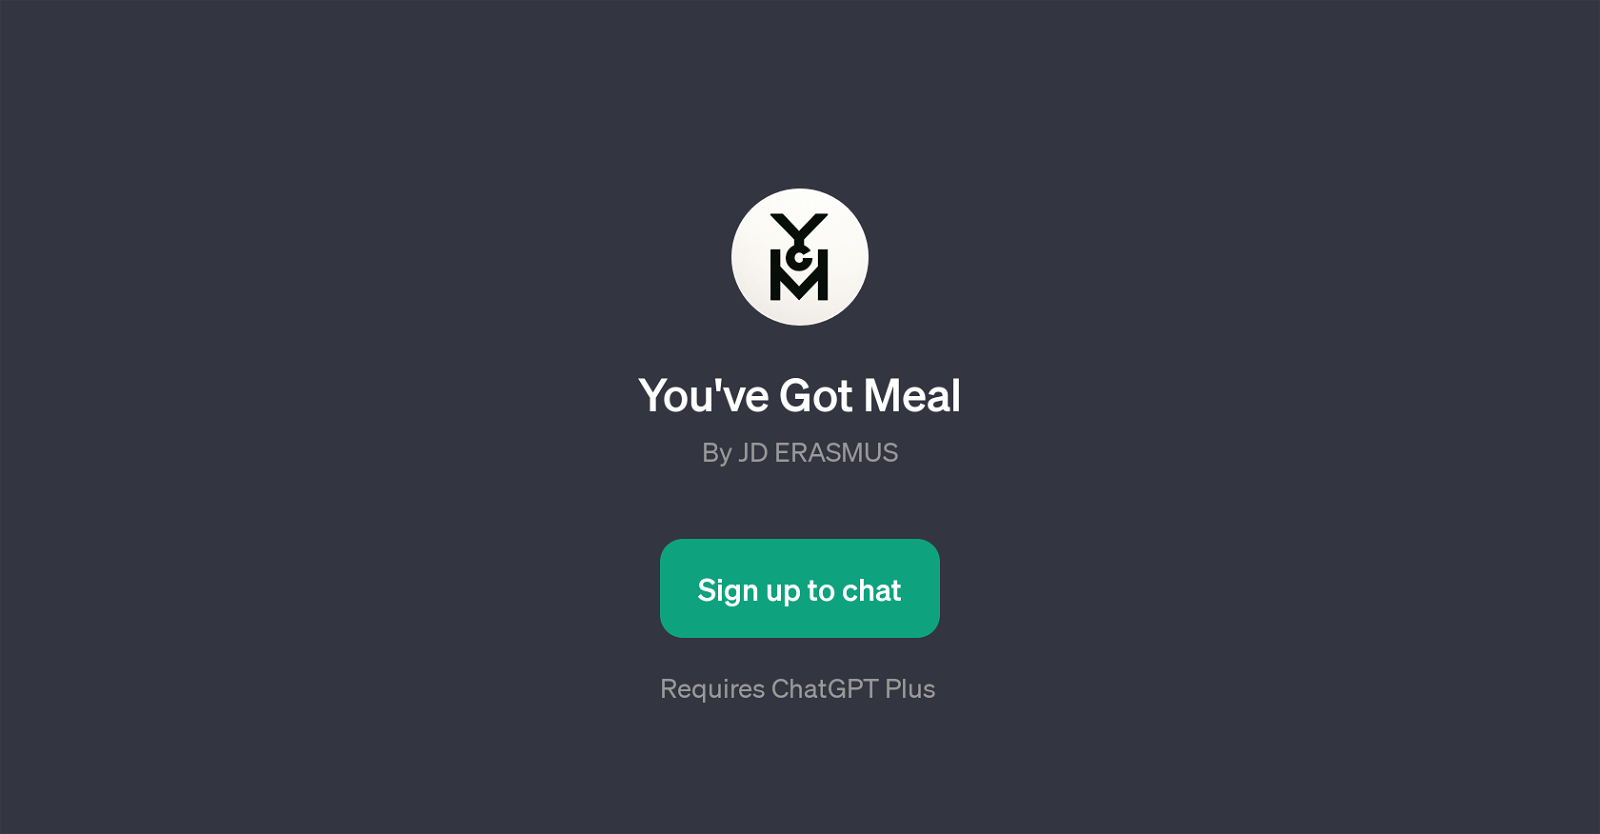 You've Got Meal website